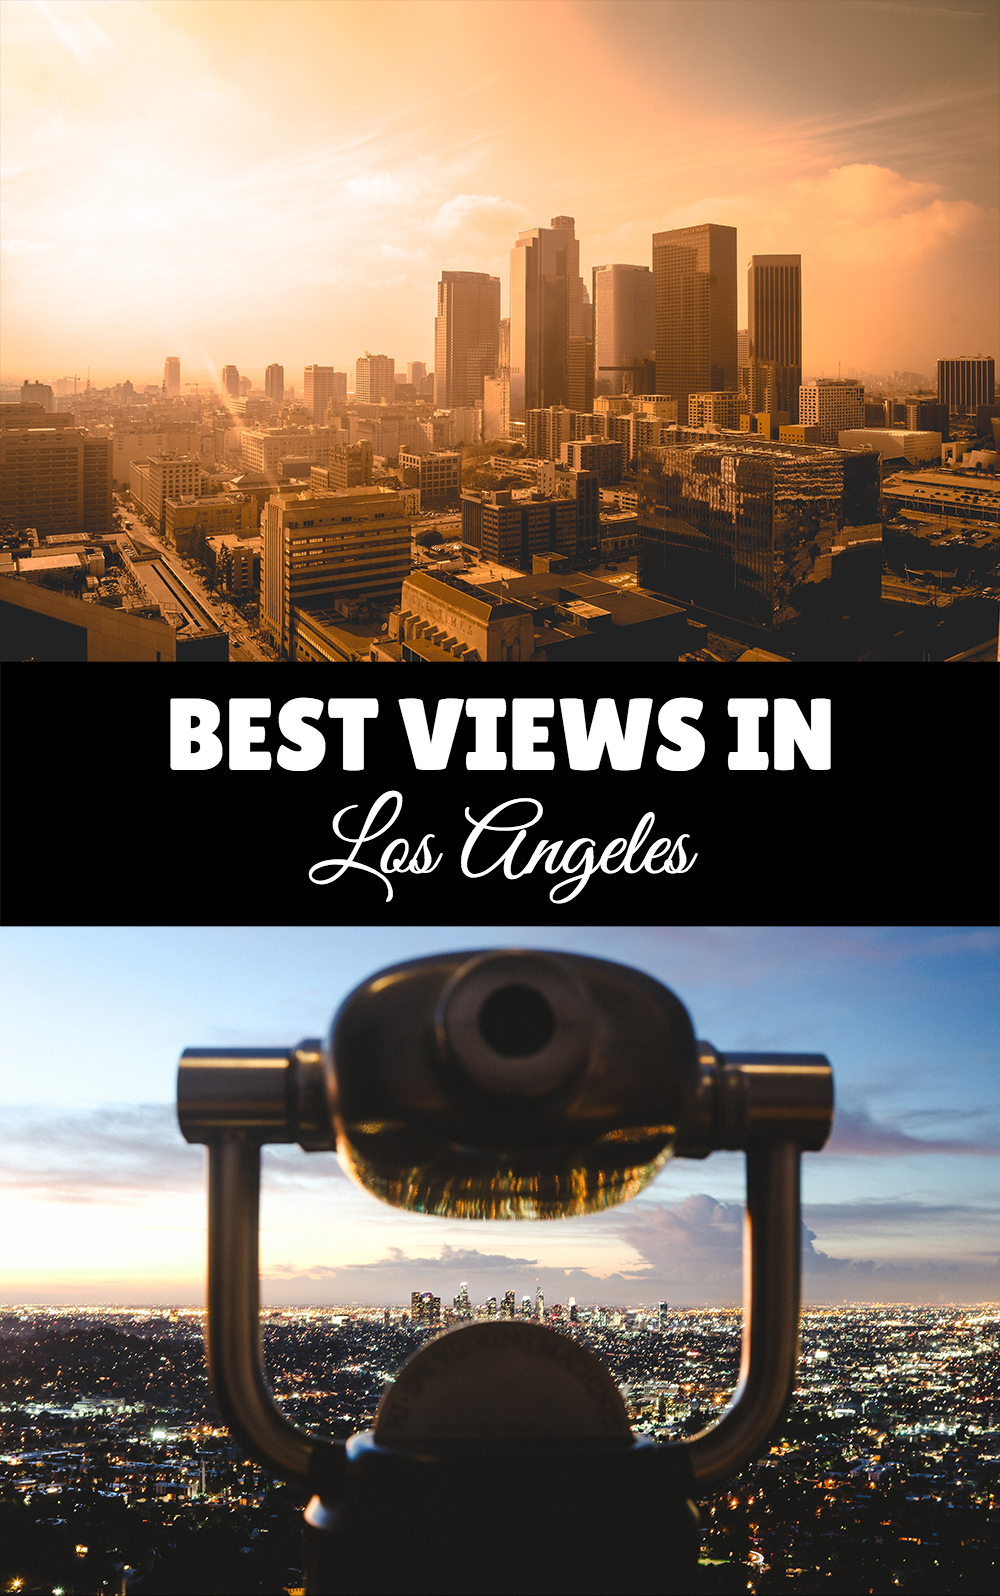 Best Views in Los Angeles